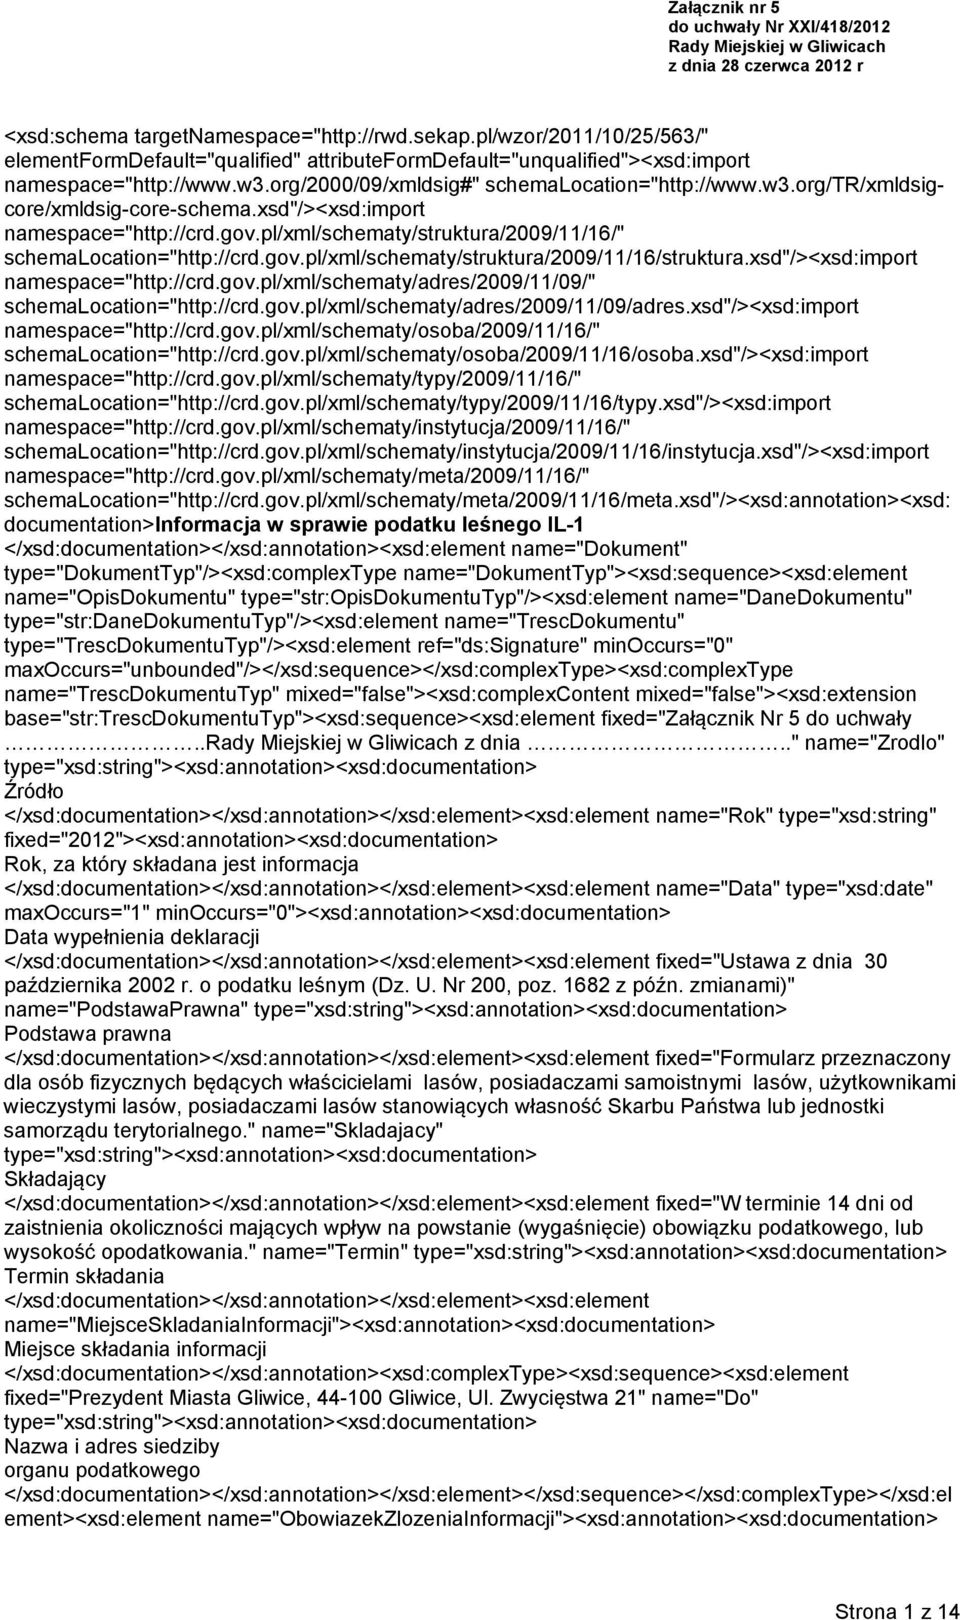 xsd"/><xsd:import namespace="http://crd.gov.pl/xml/schematy/struktura/2009/11/16/" schemalocation="http://crd.gov.pl/xml/schematy/struktura/2009/11/16/struktura.